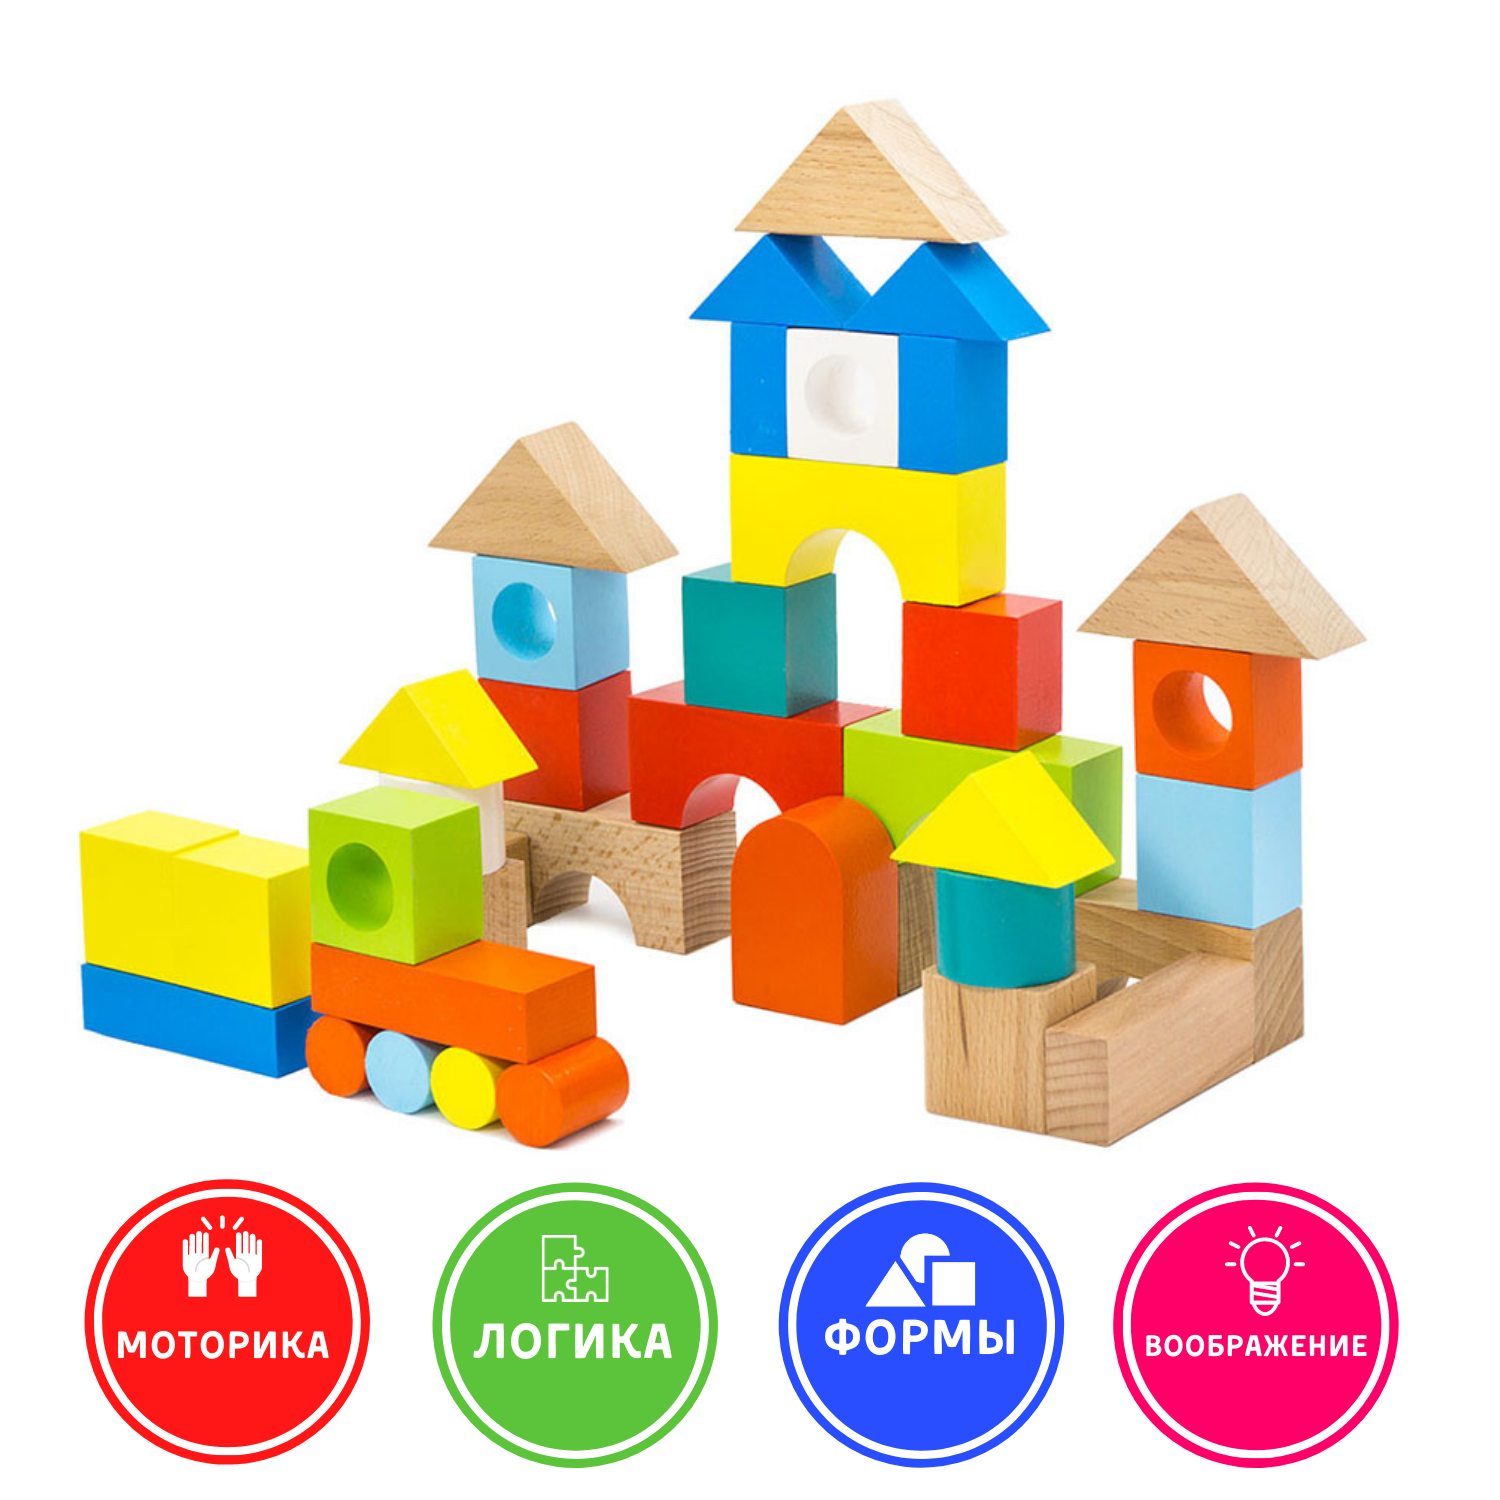 Конструктор Городок Alatoys наповоловину окрашенный развивающая деревянная Монтессори игрушка для малышей и детей - фото 2